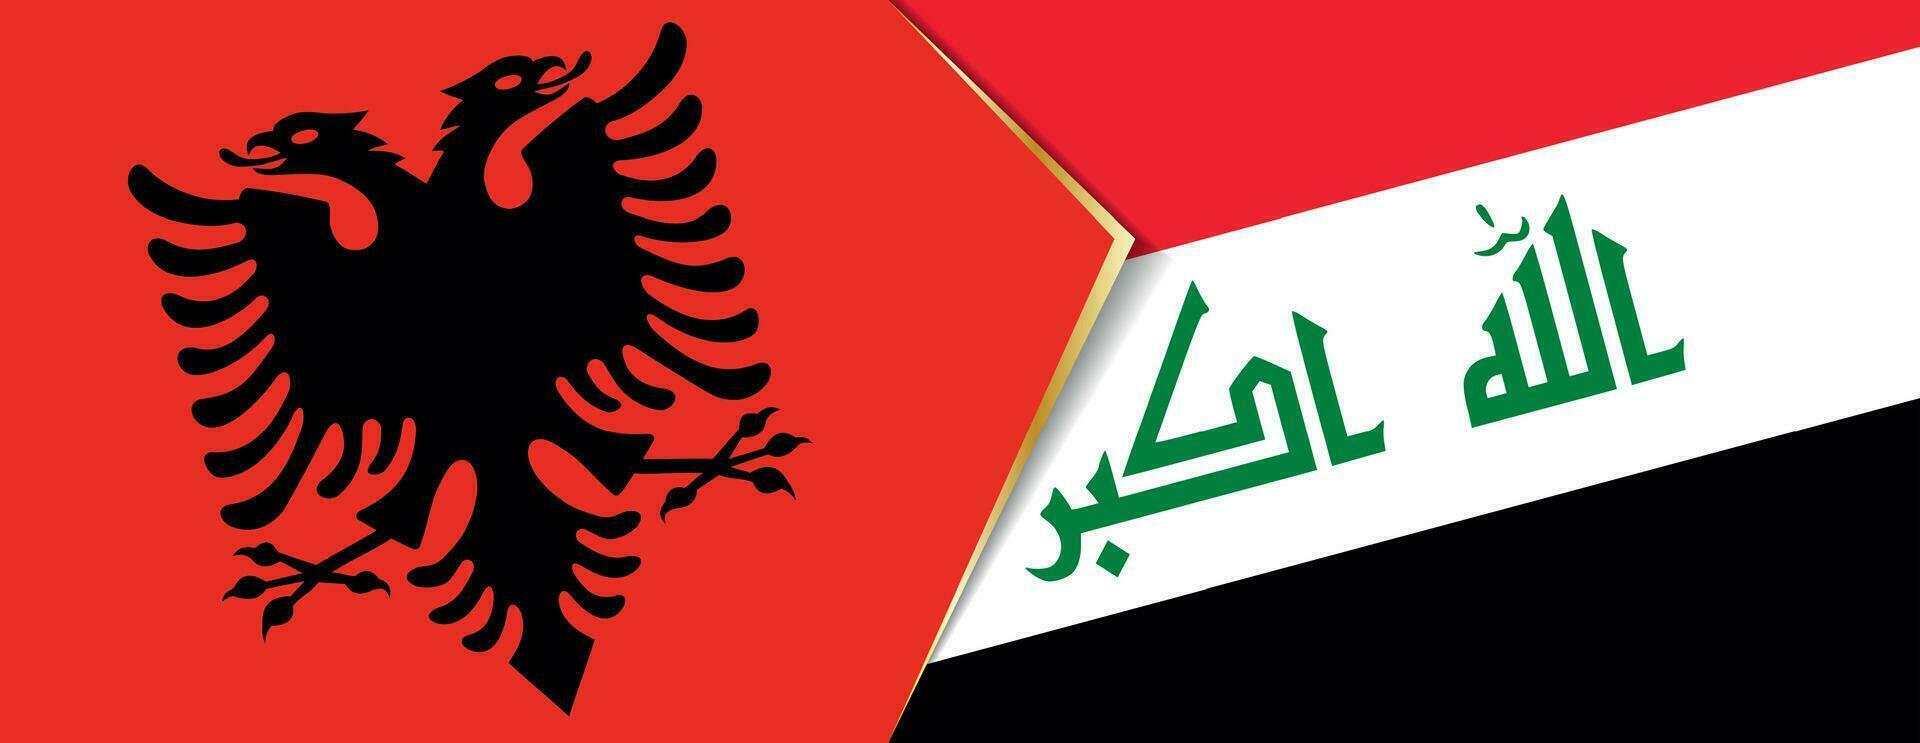 Albanie et Irak drapeaux, deux vecteur drapeaux.